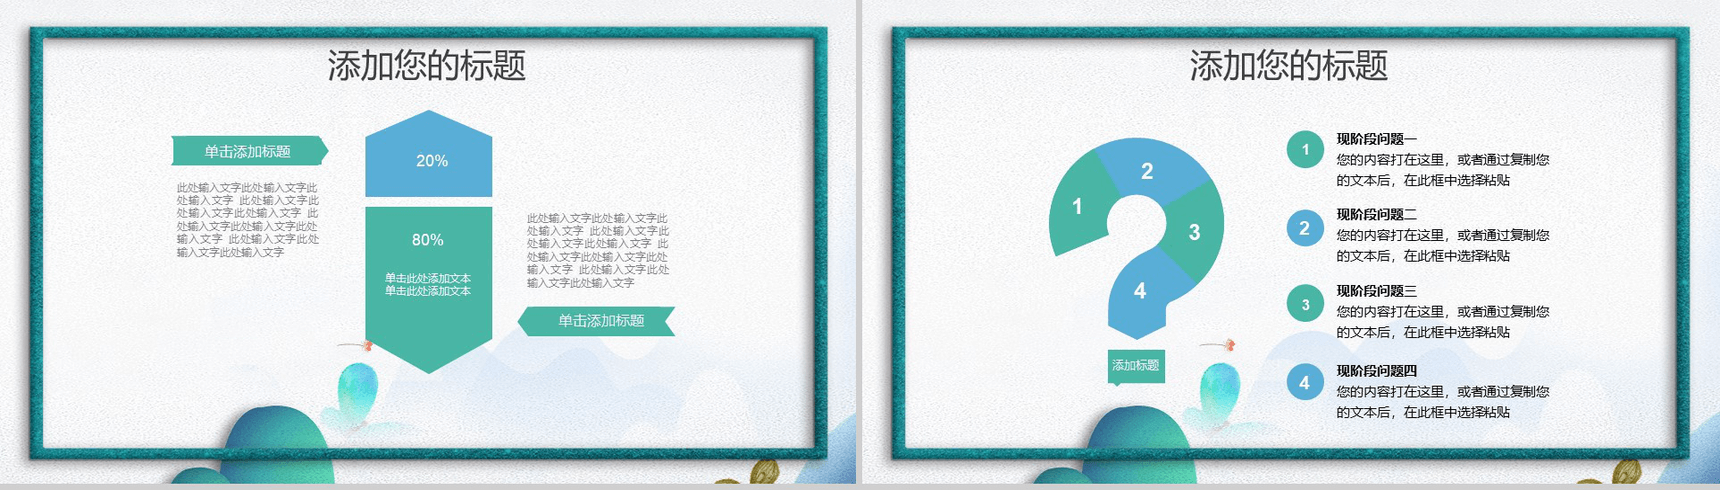 绿色手绘创意中国风个人简历竞聘PPT模板-10